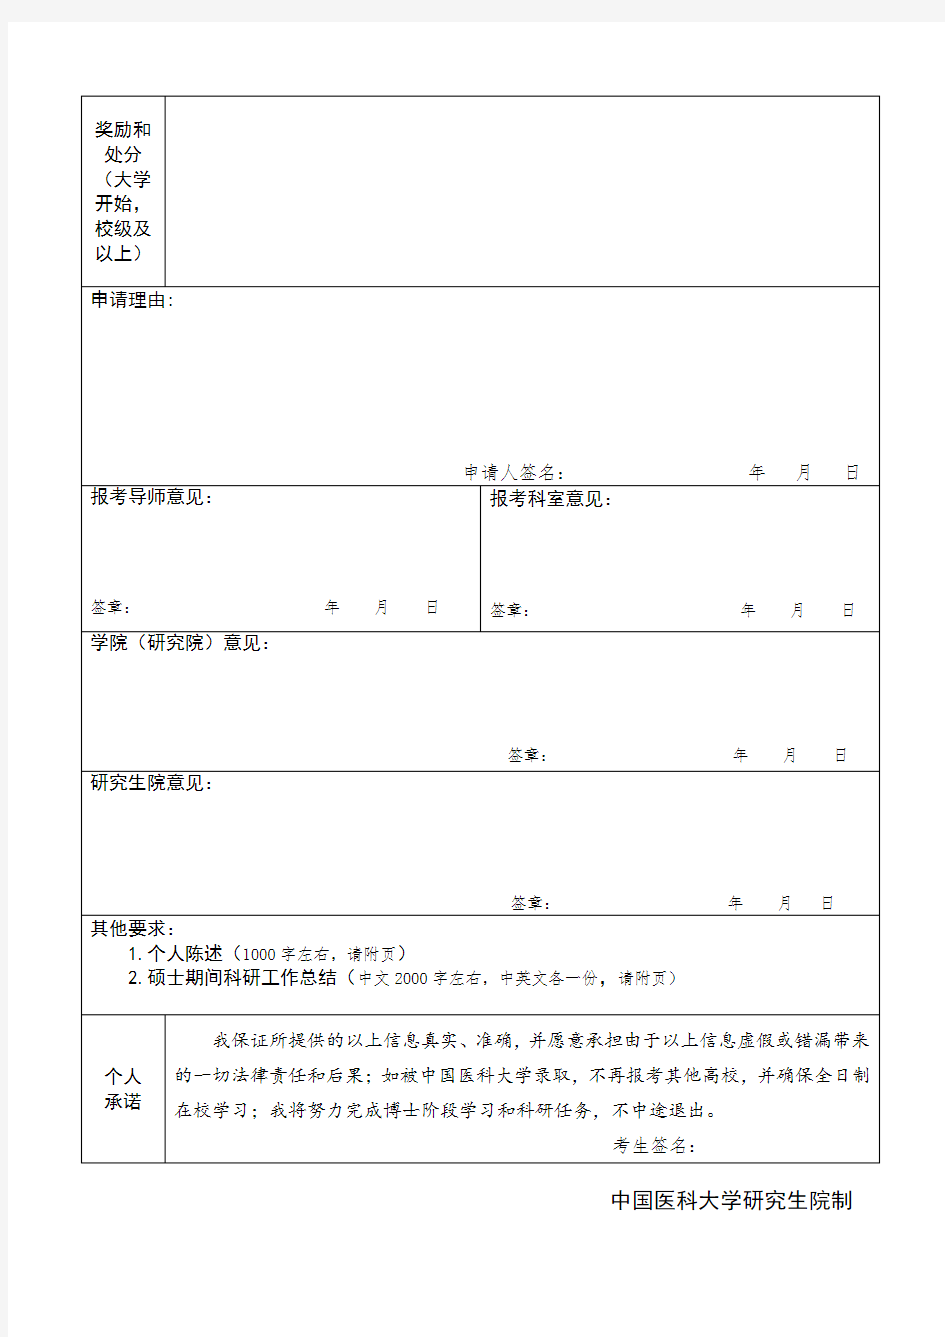 中国医科大学2020年申请-考核制选拔博士研究生申请表【模板】